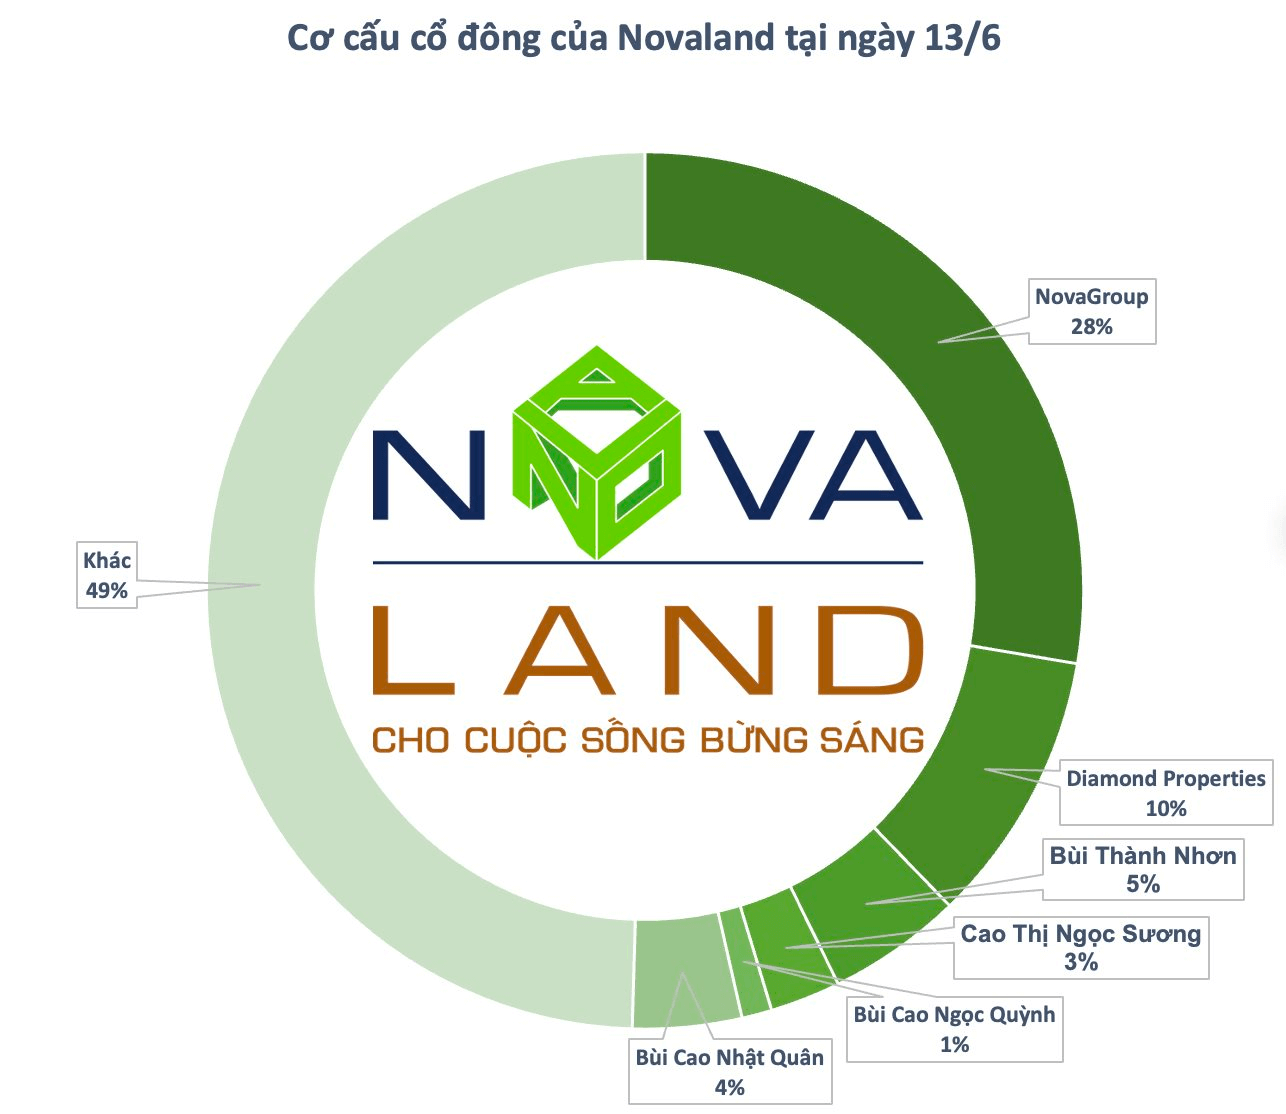 Novagroup đăng ký bán hơn 136 triệu cổ phiếu nvl, nhóm cổ đông liên quan đến ông bùi thành nhơn sẽ giảm tỷ lệ sở hữu tại novaland xuống dưới 49%